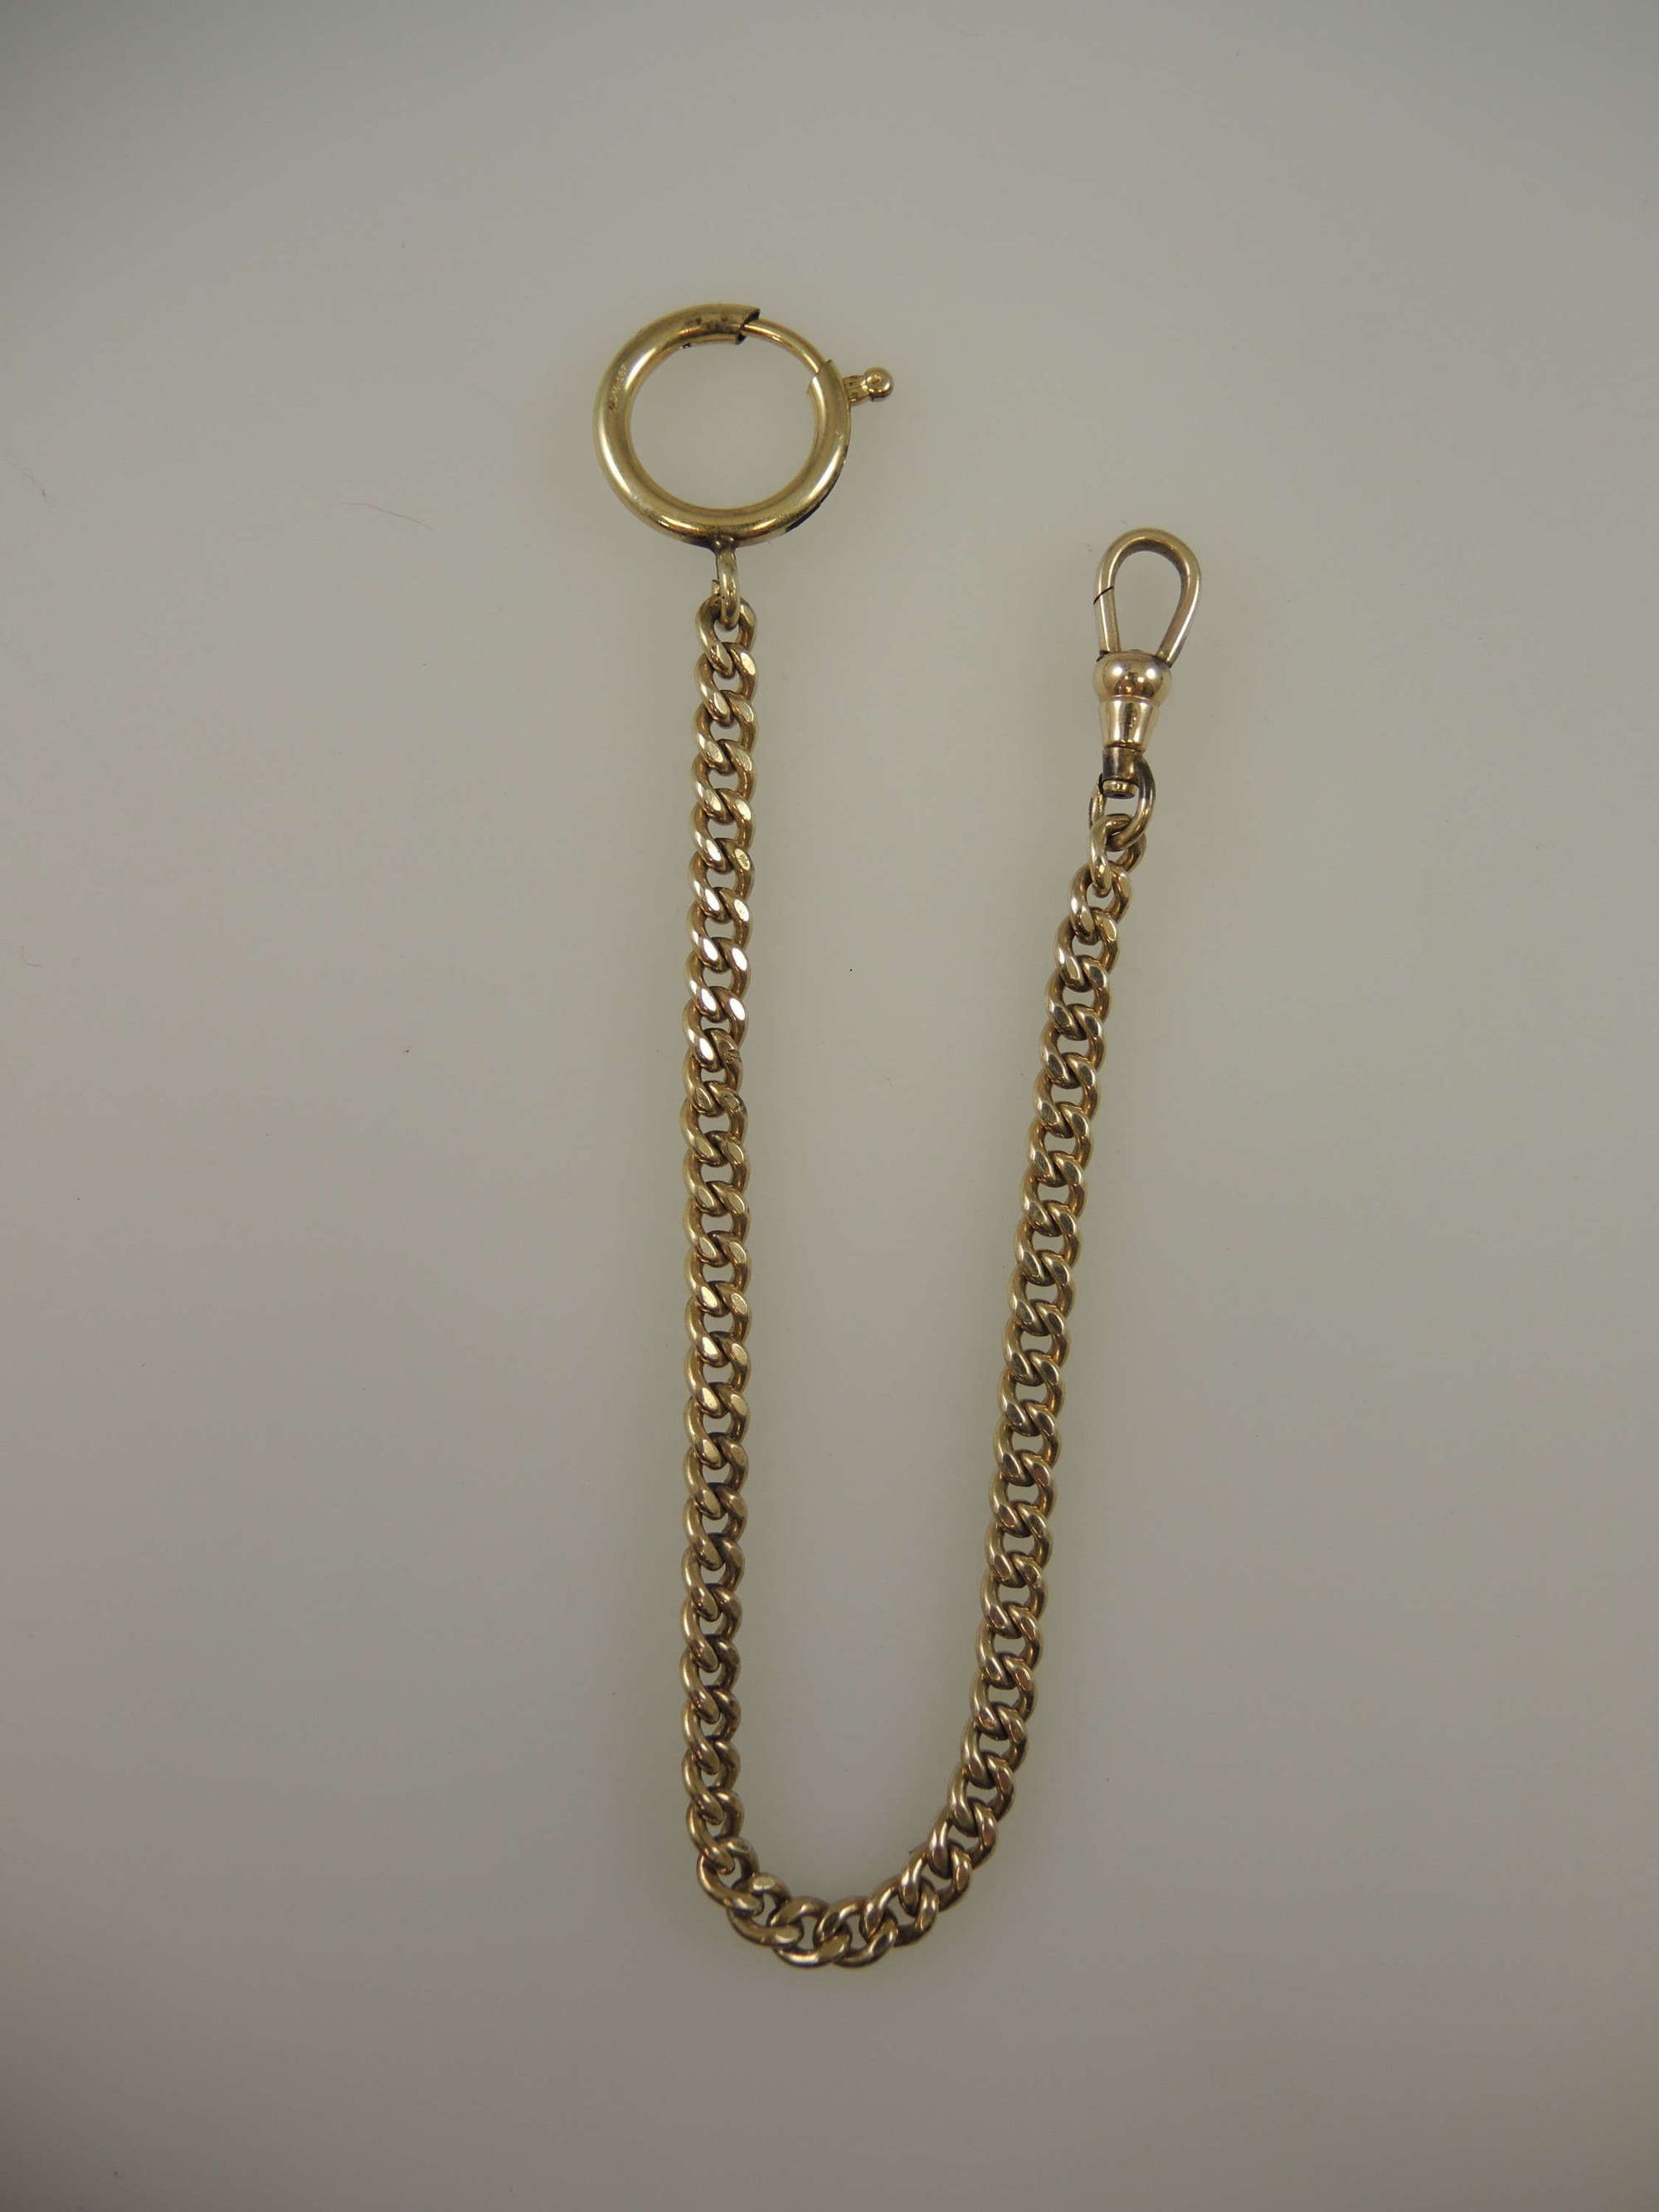 Smart 14K gold filled pocket watch chain for a blazer pocket c1900